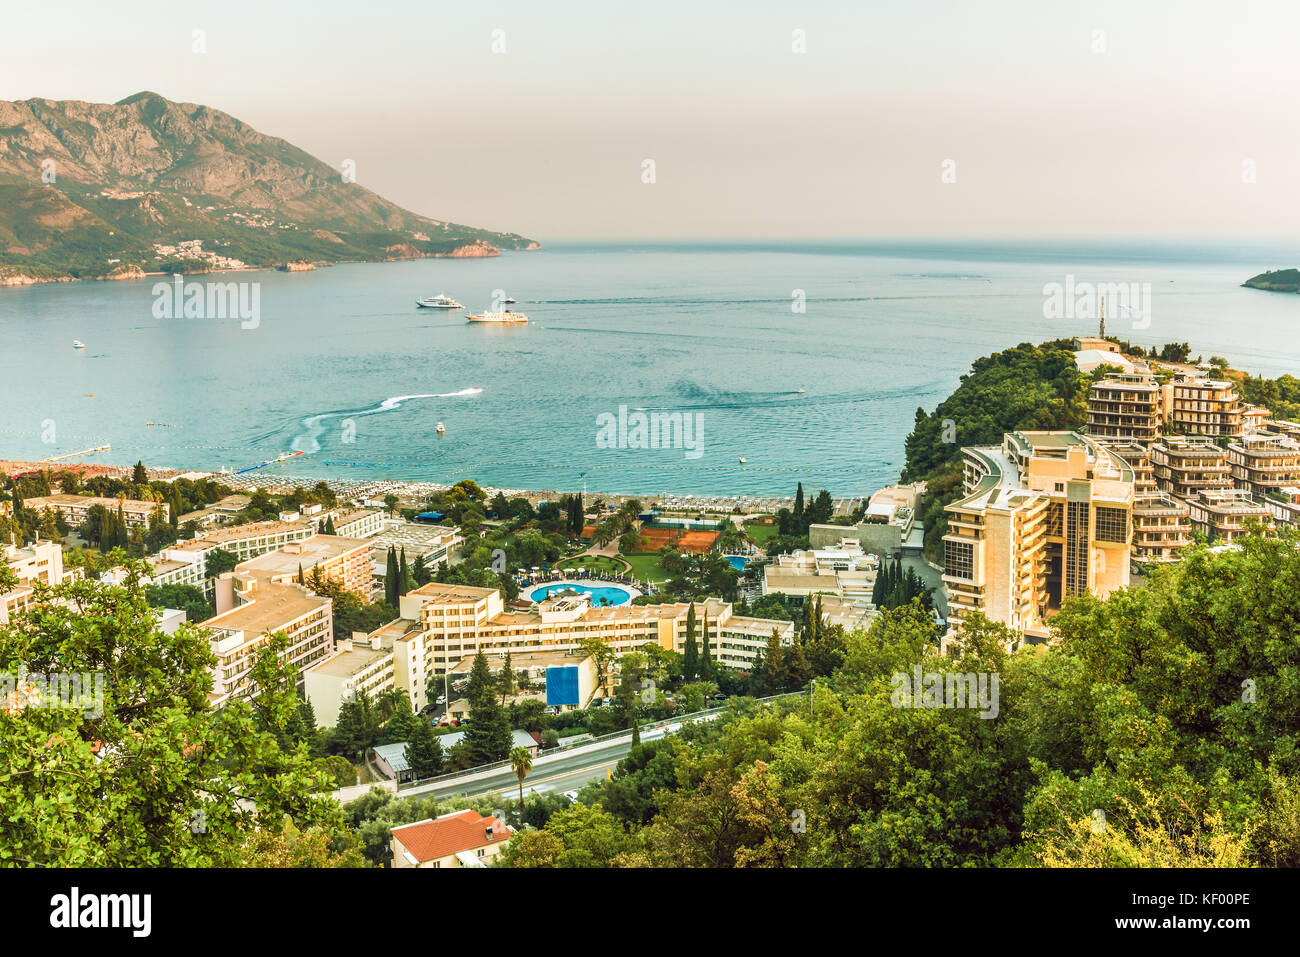 Visualizza gli alberghi e spiagge affollate della cittadina di becici, riviera di Budva, Montenegro. Foto Stock